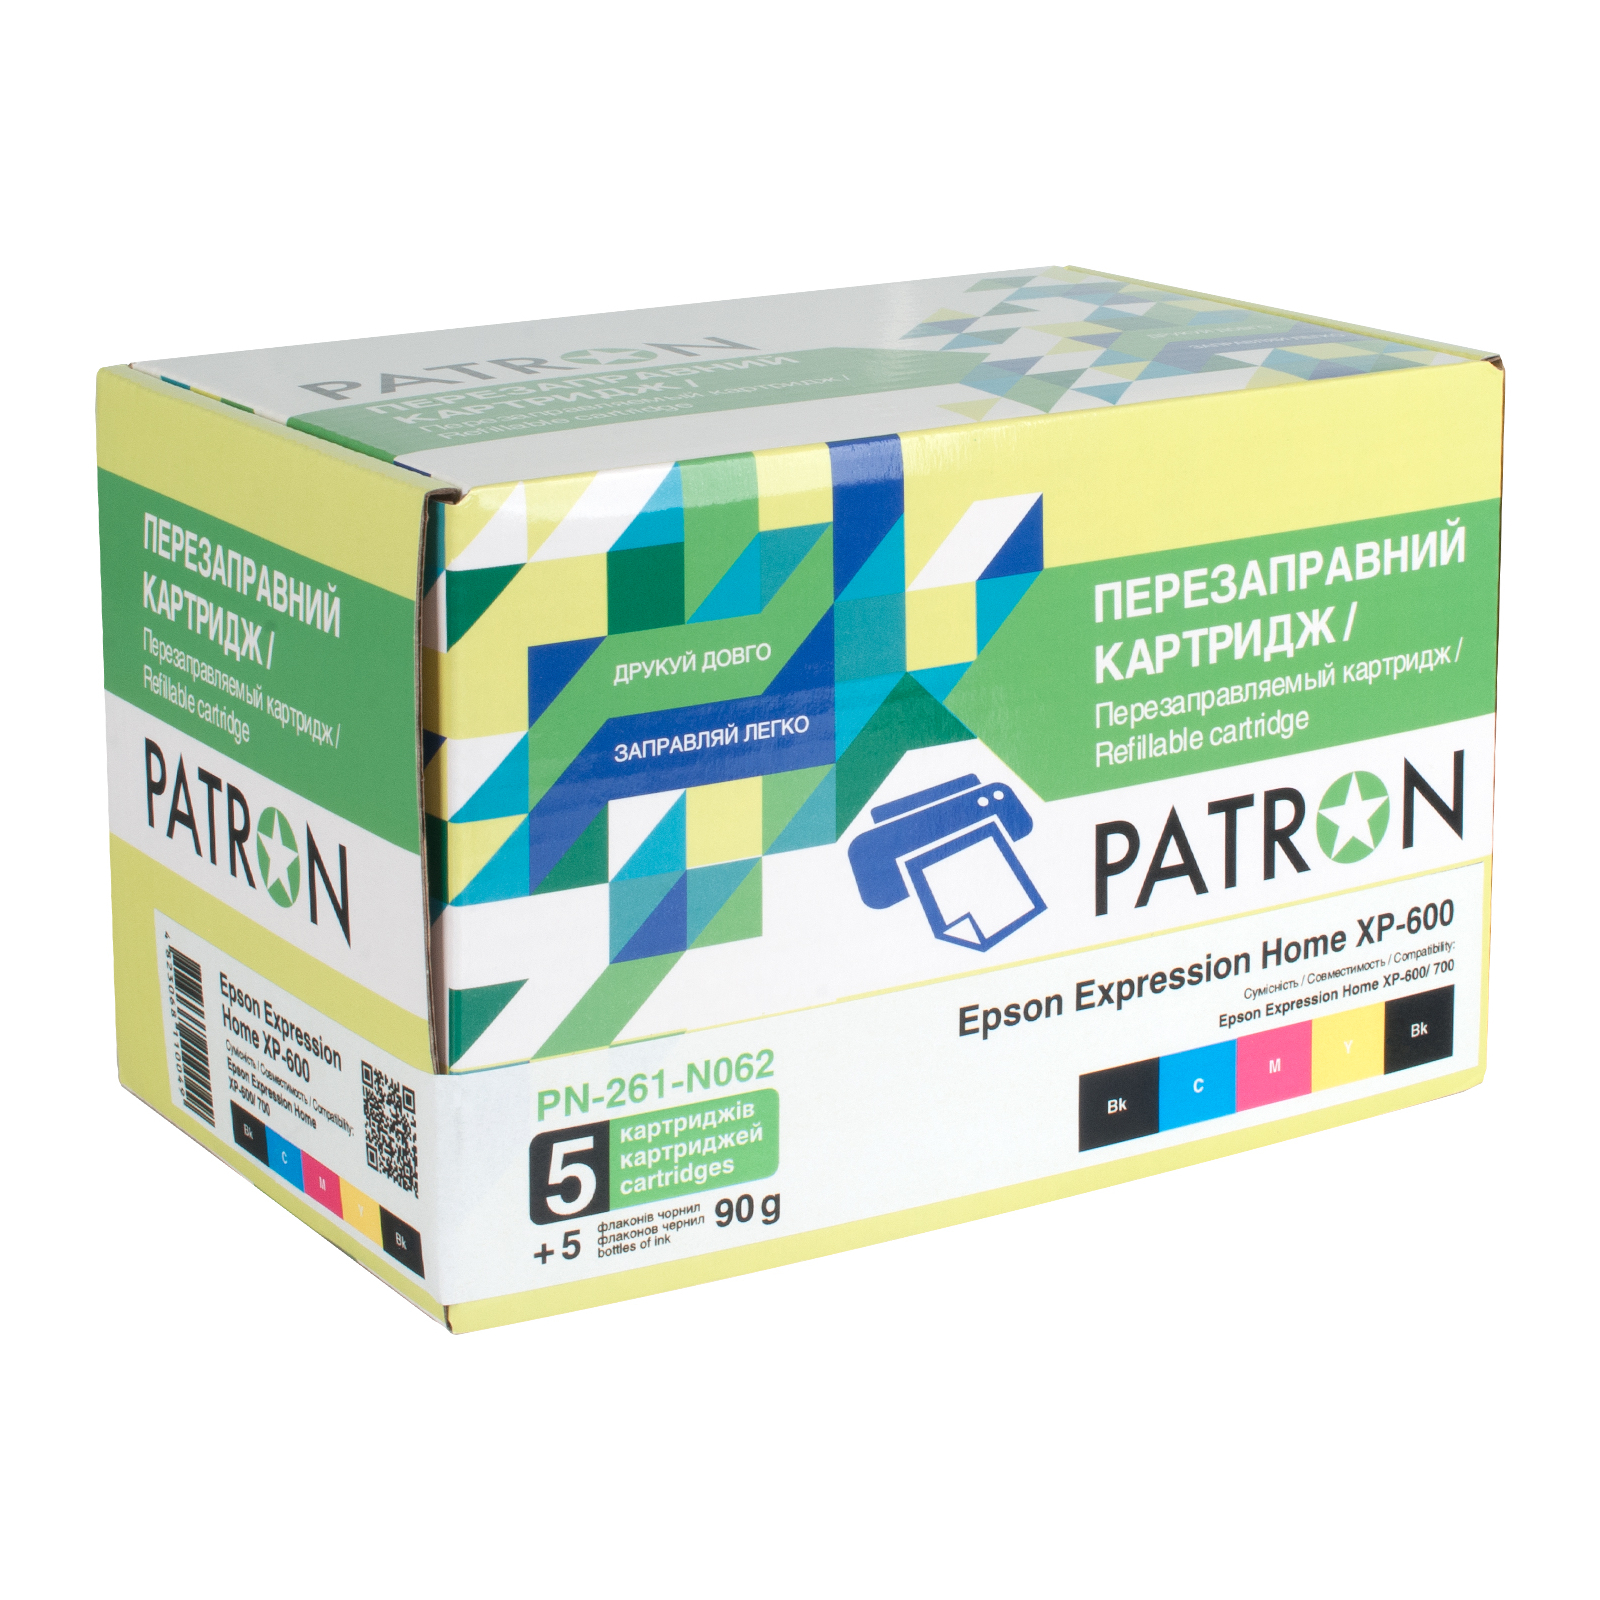 Комплект перезаправляемых картриджей Patron Epson XP-600/ 700/ 800 (PN-261-N062)